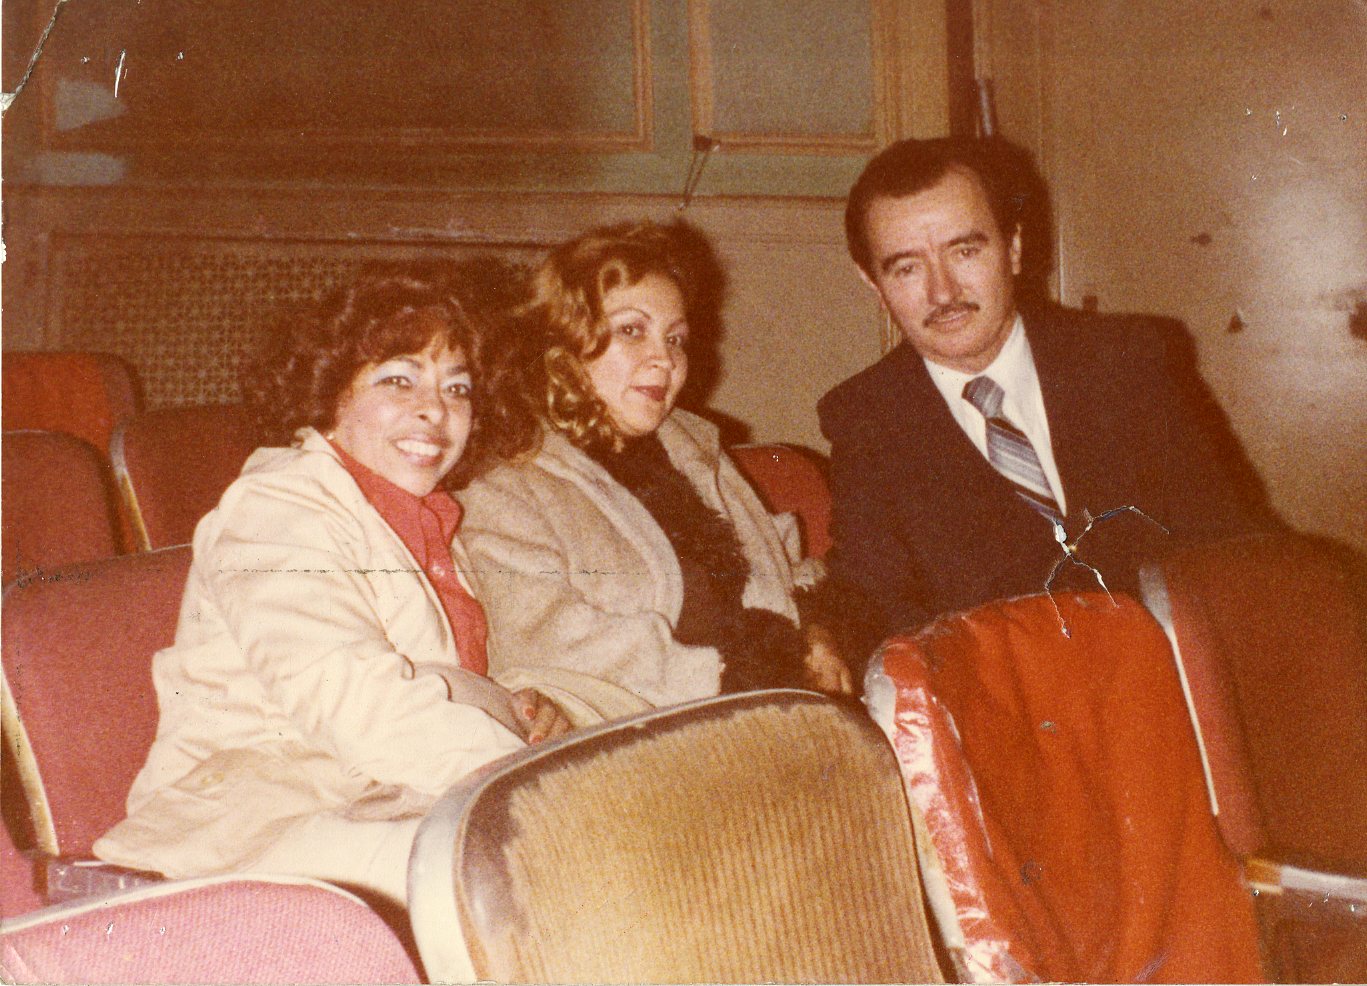 Normandía Maldonado, Zunilda Fondeur, and Happy Hills Casino booking agent Alvarito Ortiz, ca. 1970s